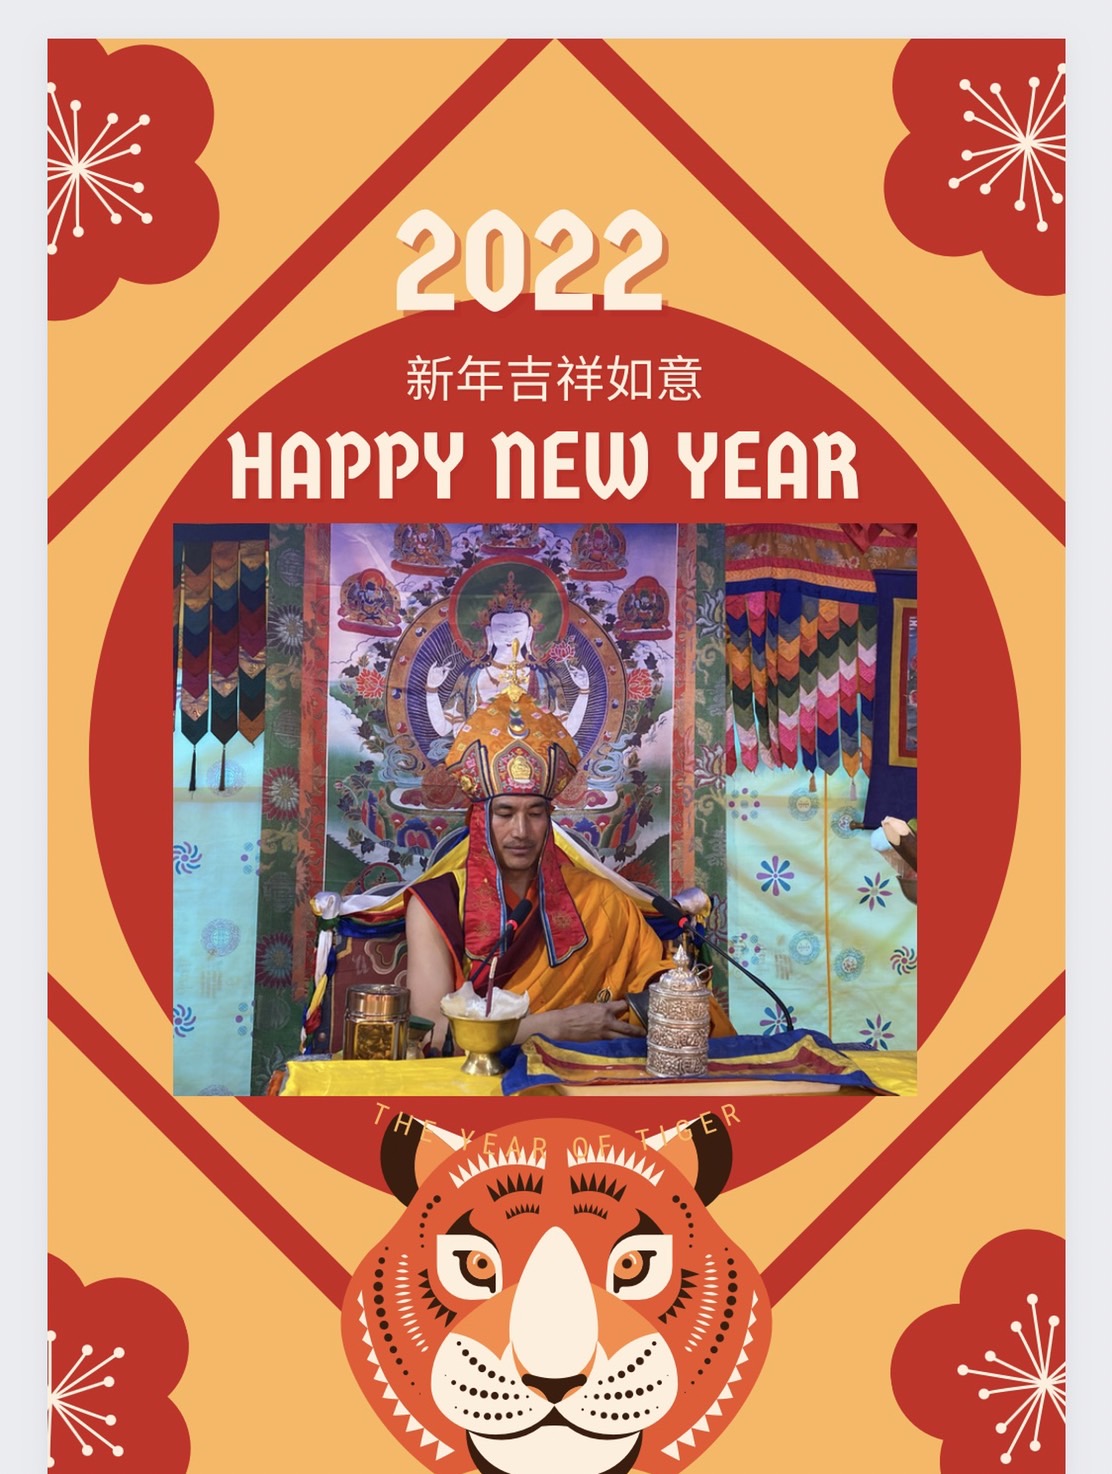 迎新除舊，感謝2021年的一切，邁向2022年啓始，祝福吉祥。